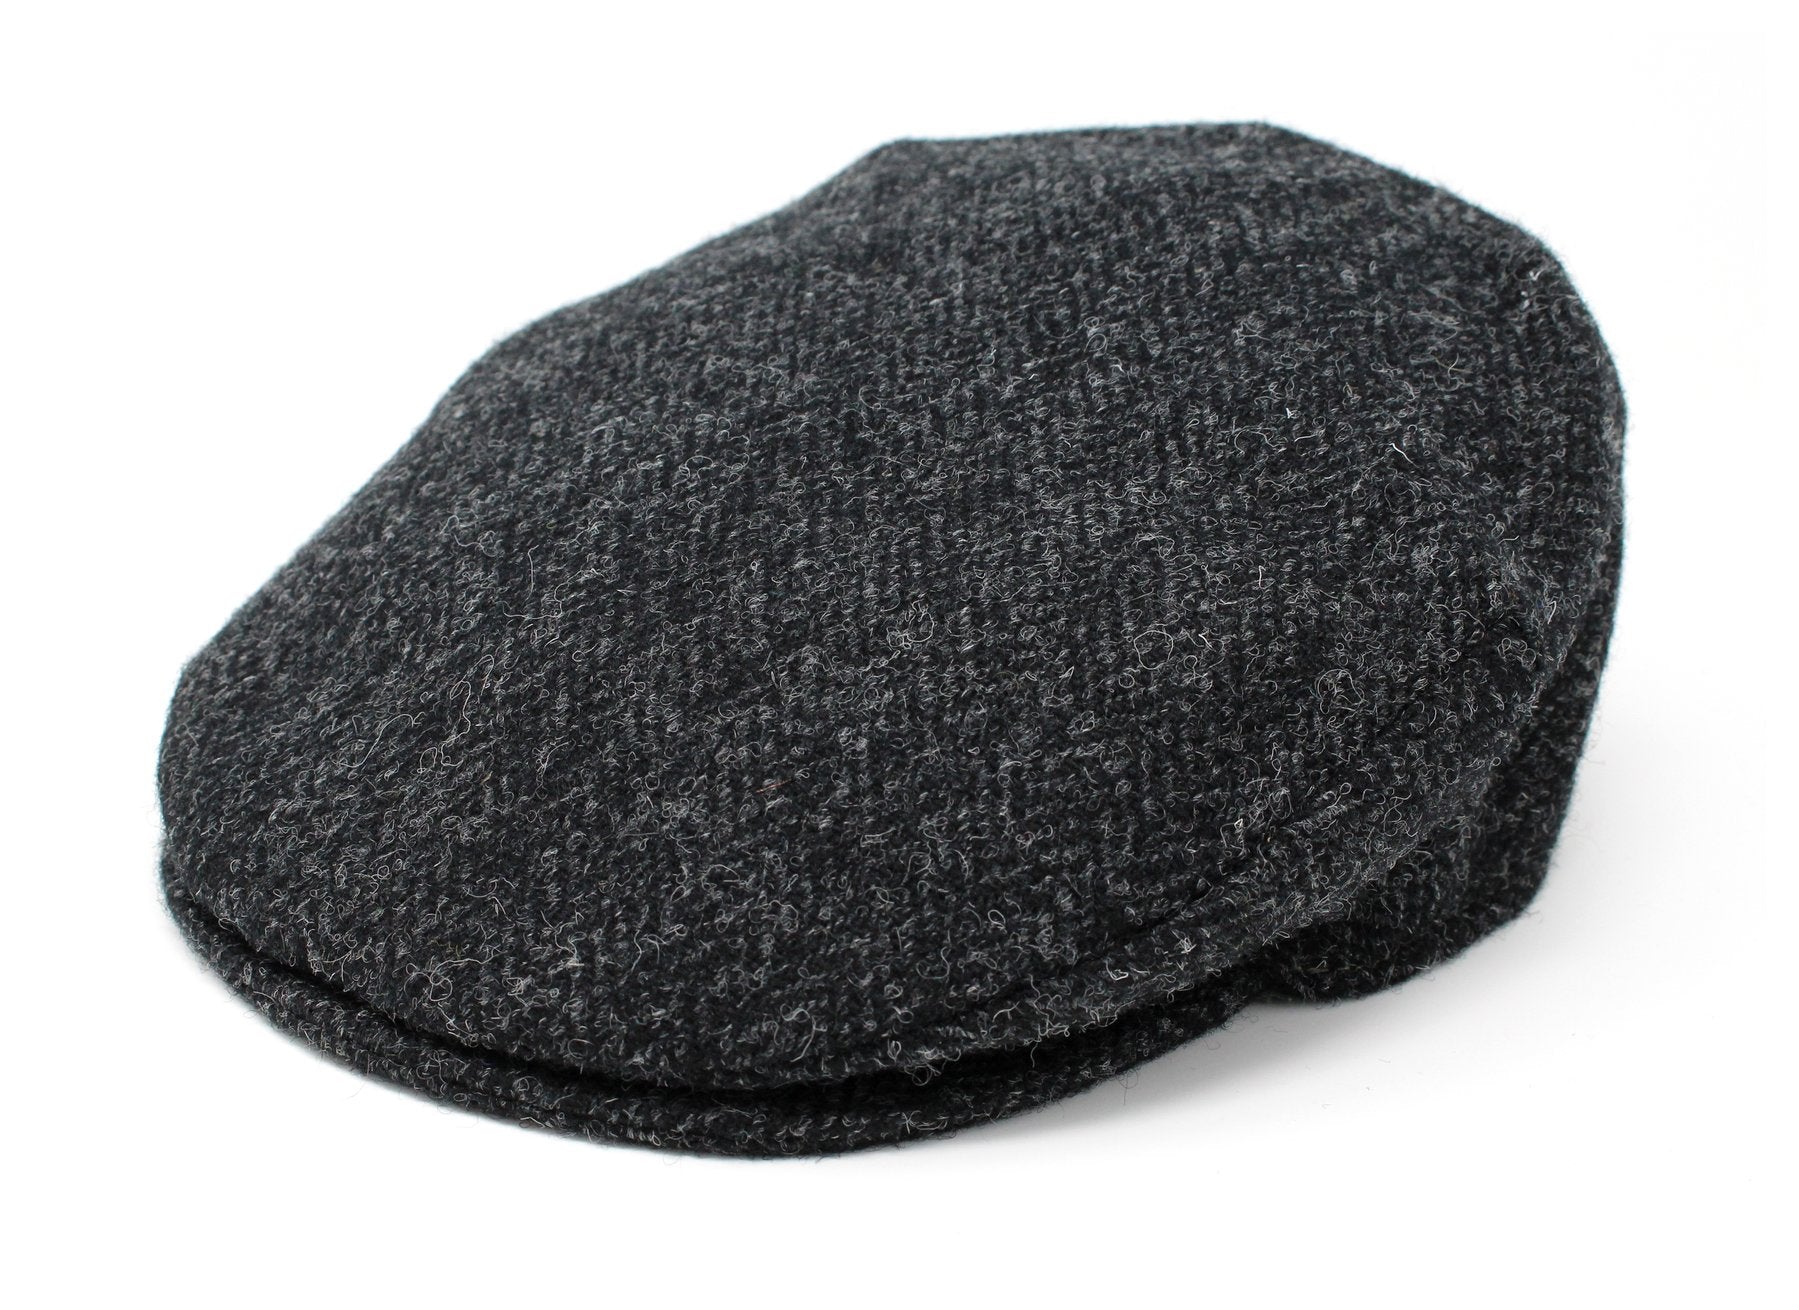 Tweed Vintage Flat Cap